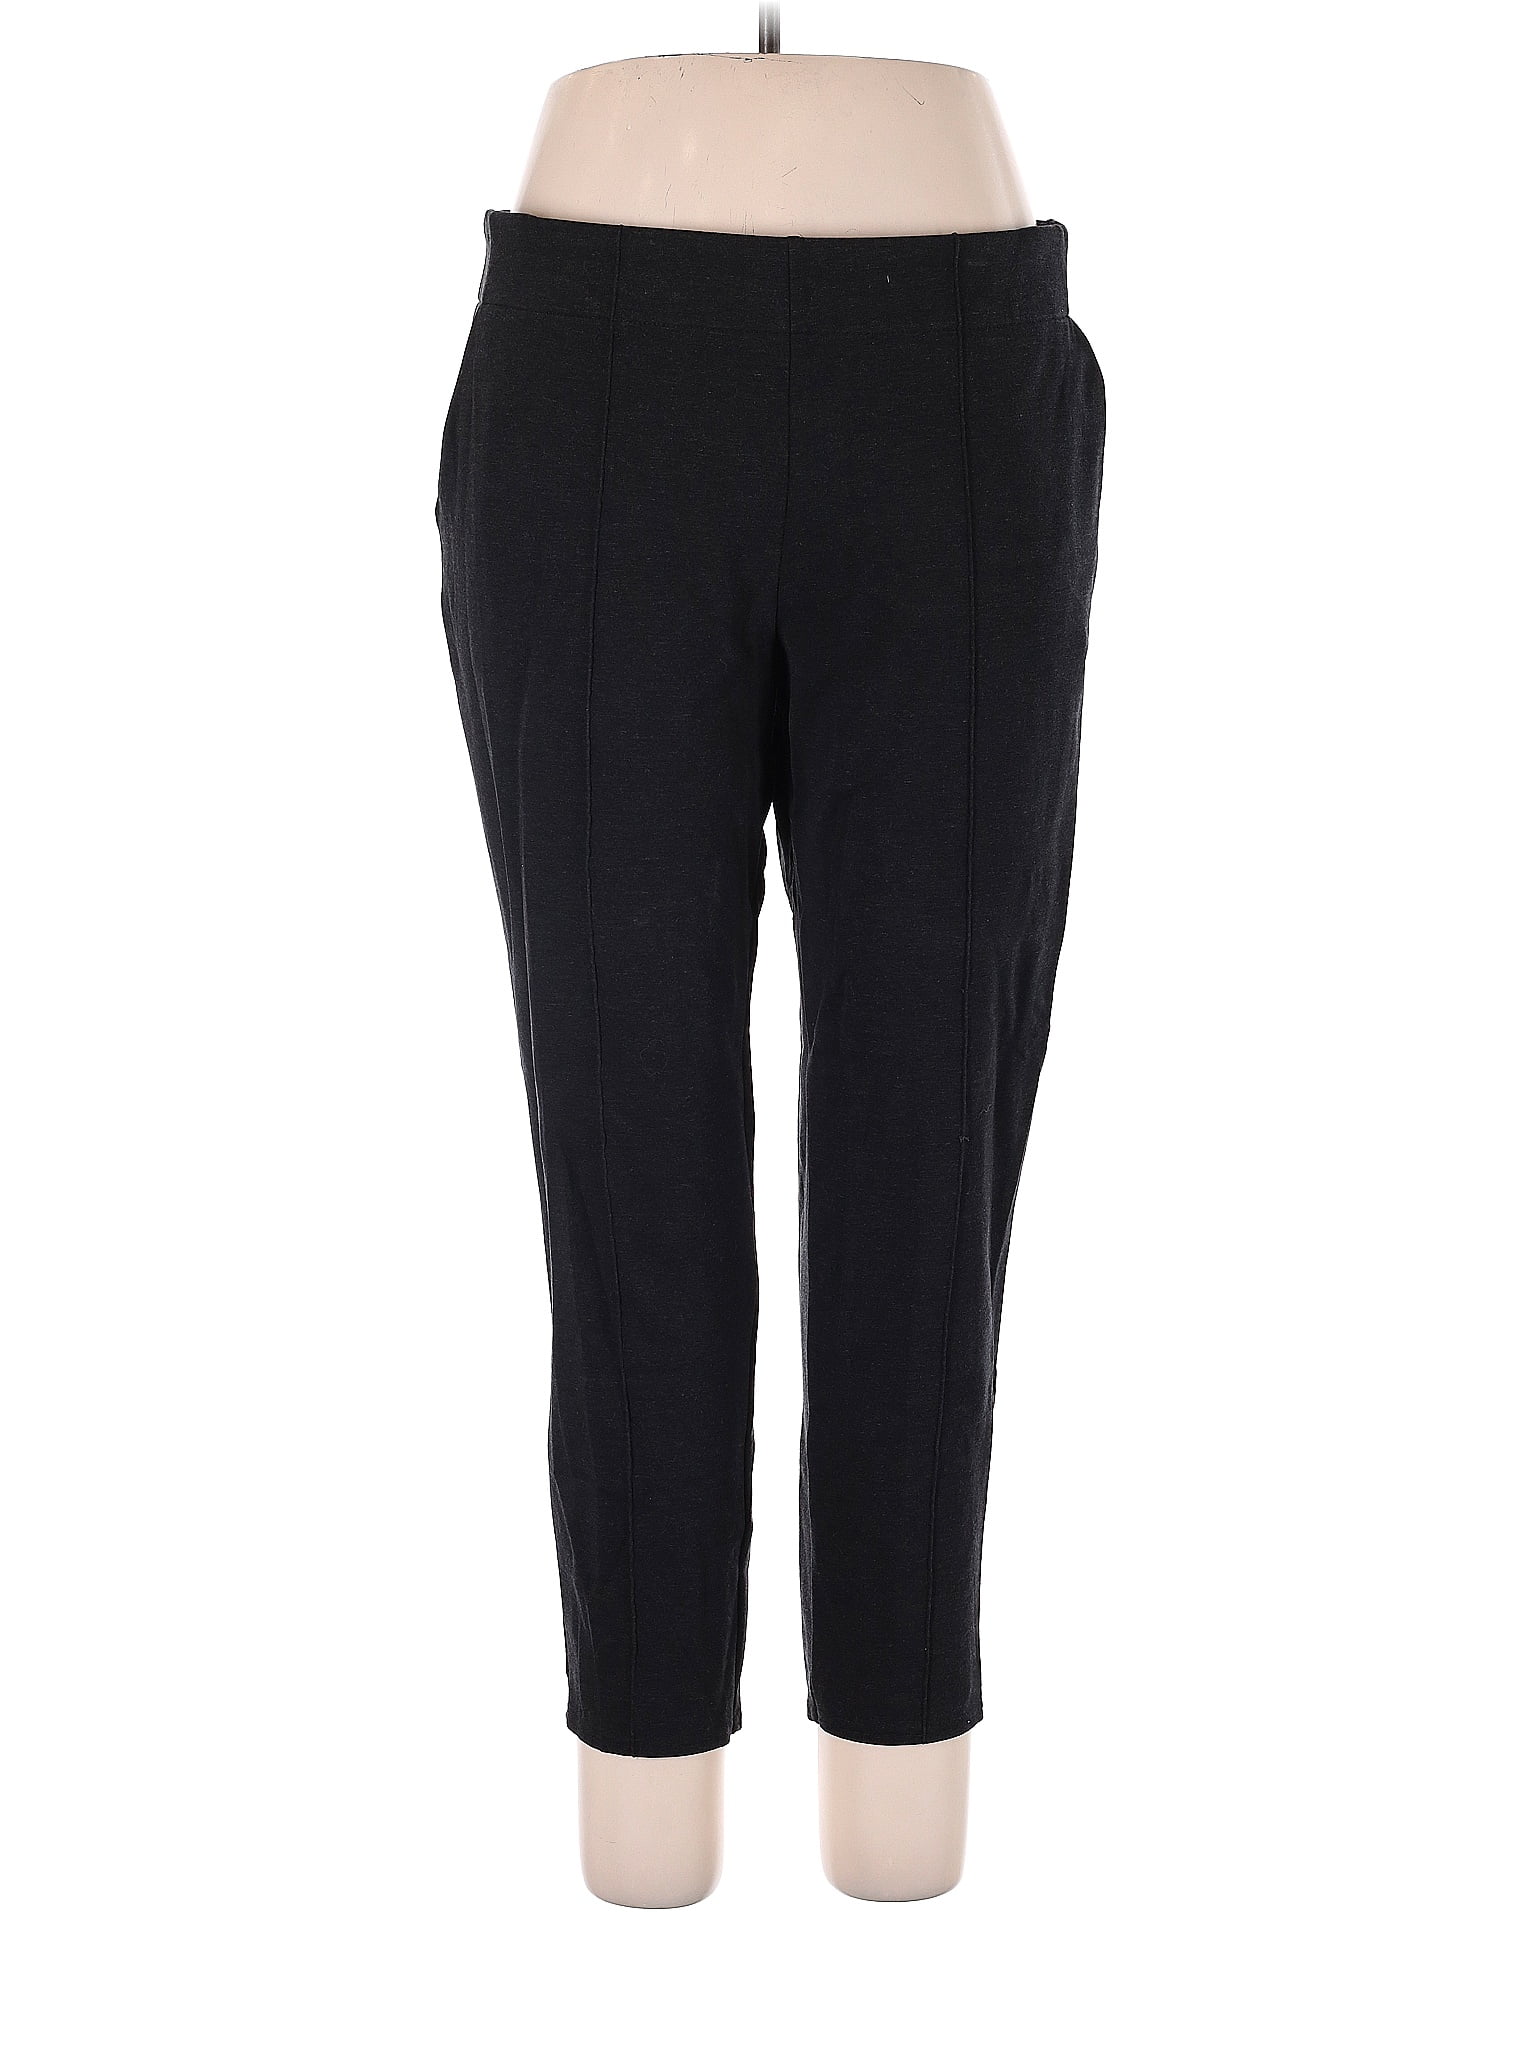 Simply Vera Vera Wang Polka Dots Black Casual Pants Size XL - 51% off